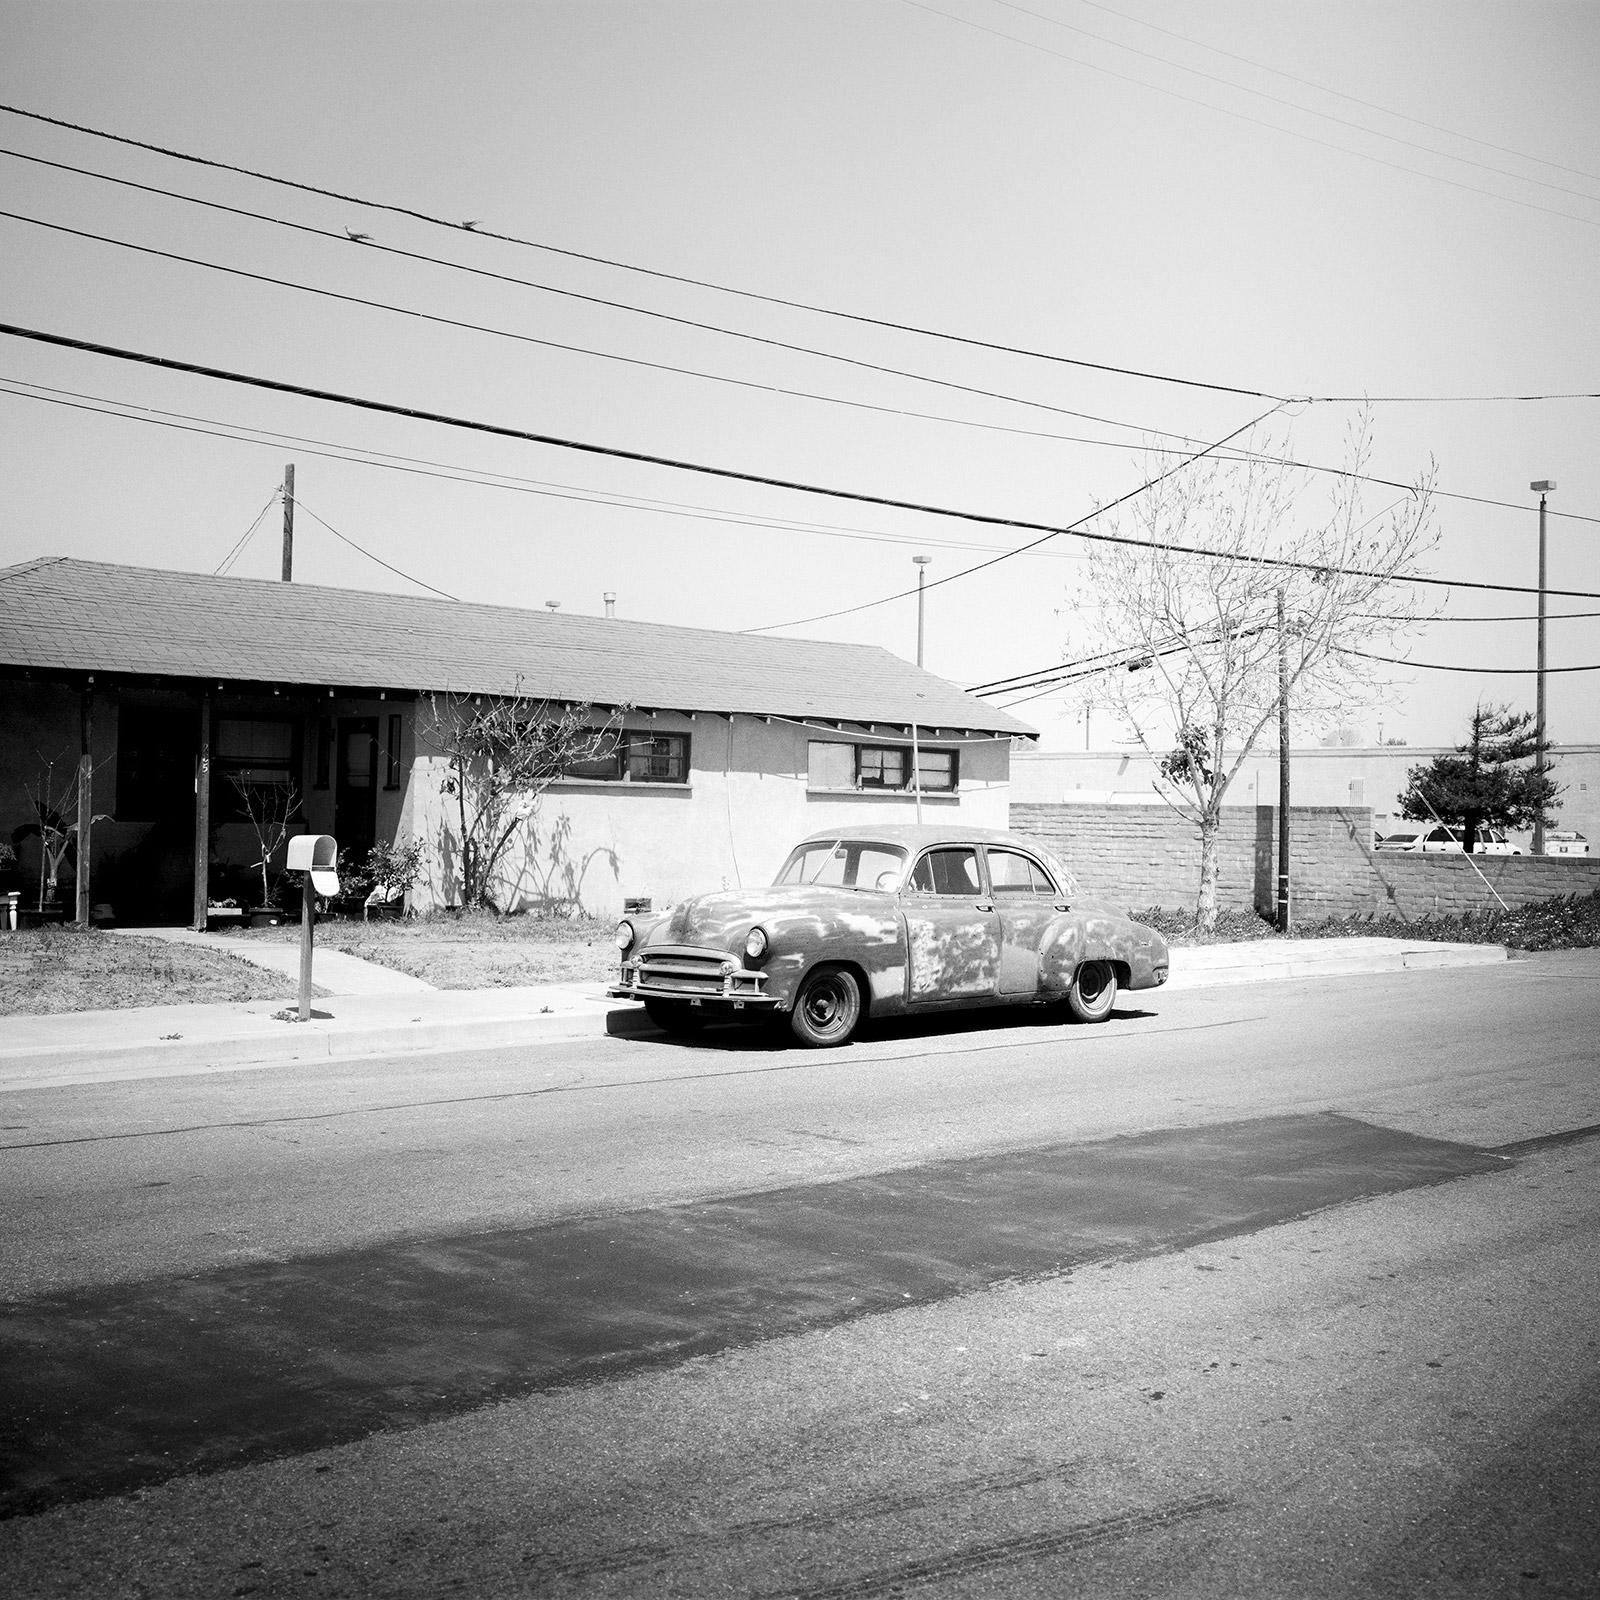 Haus, Classic Car, Arizona, USA, Schwarz-Weiß-Landschaftsfotografie-Kunstdruck